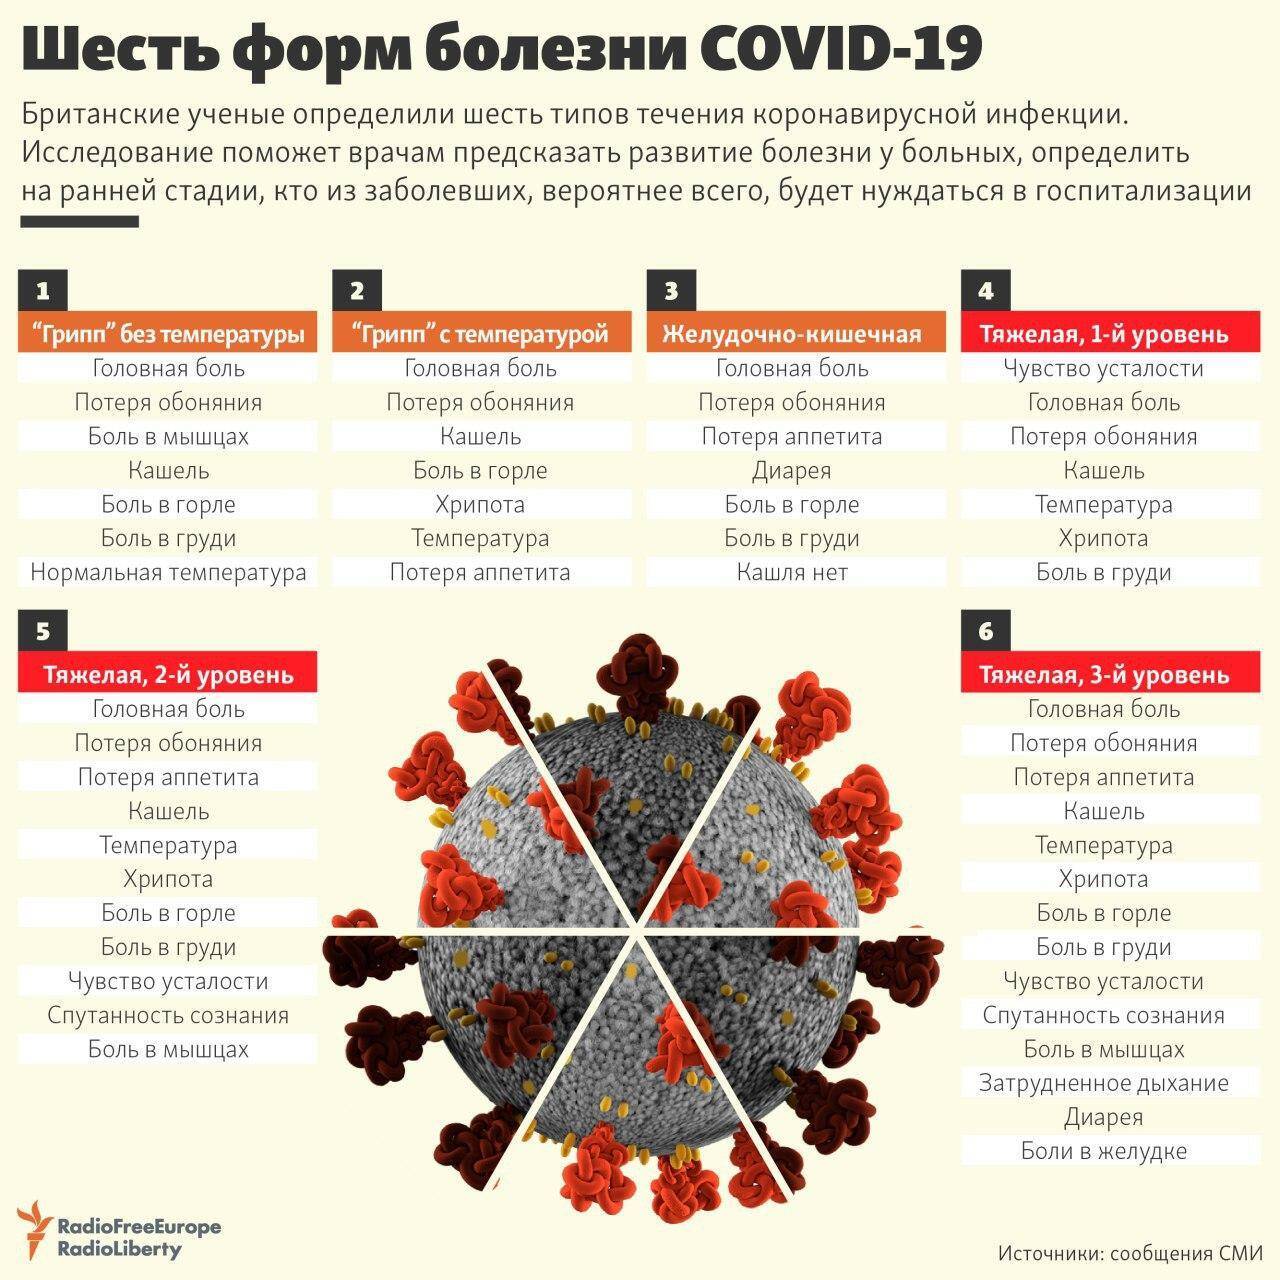 6 форм течения COVID-19